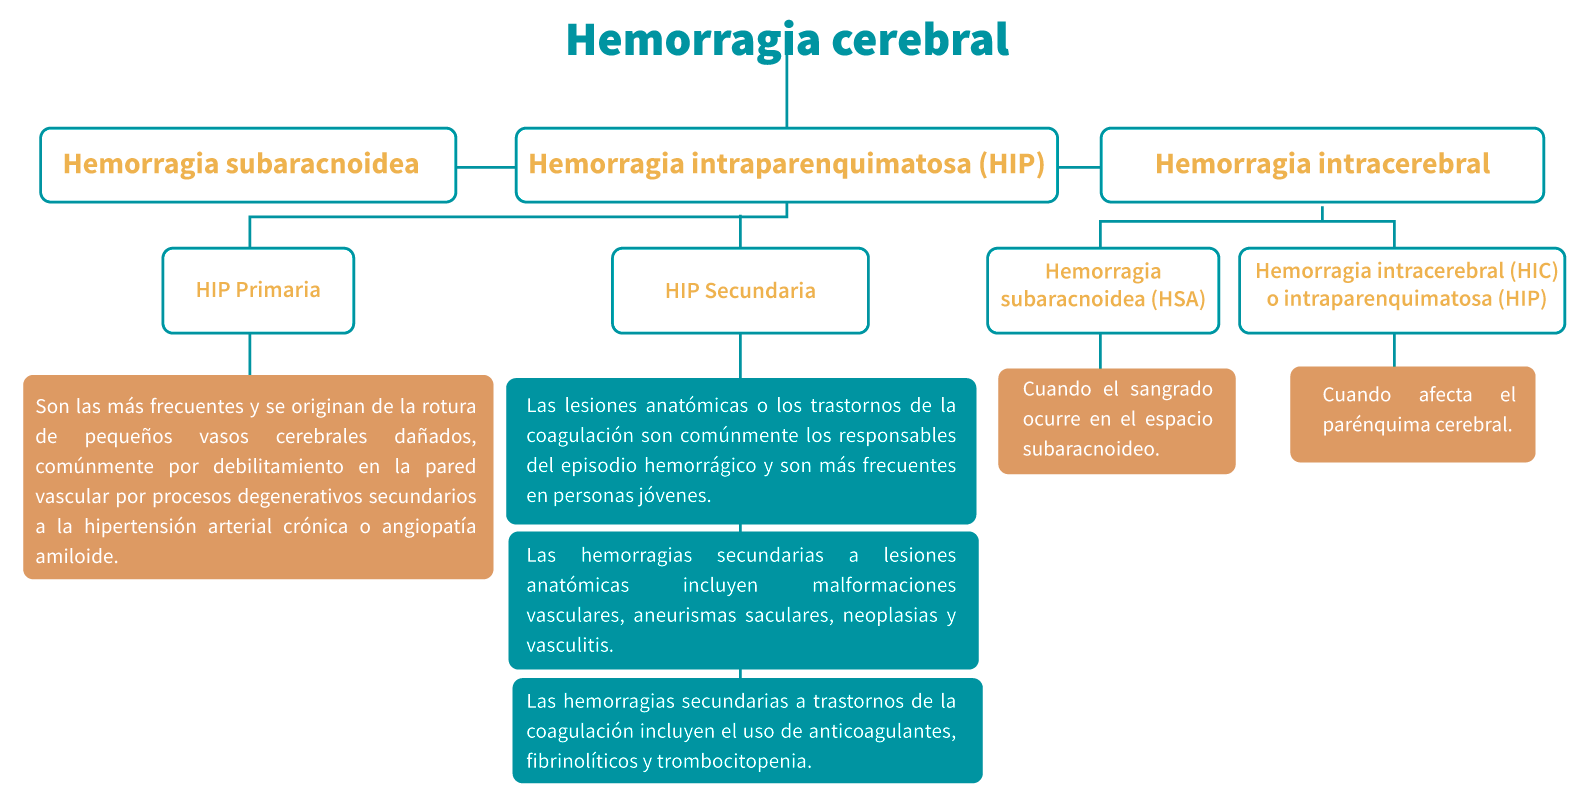 Clasificación de la hemorragia cerebral (Barinagarrementeria y Cantú, 2003)